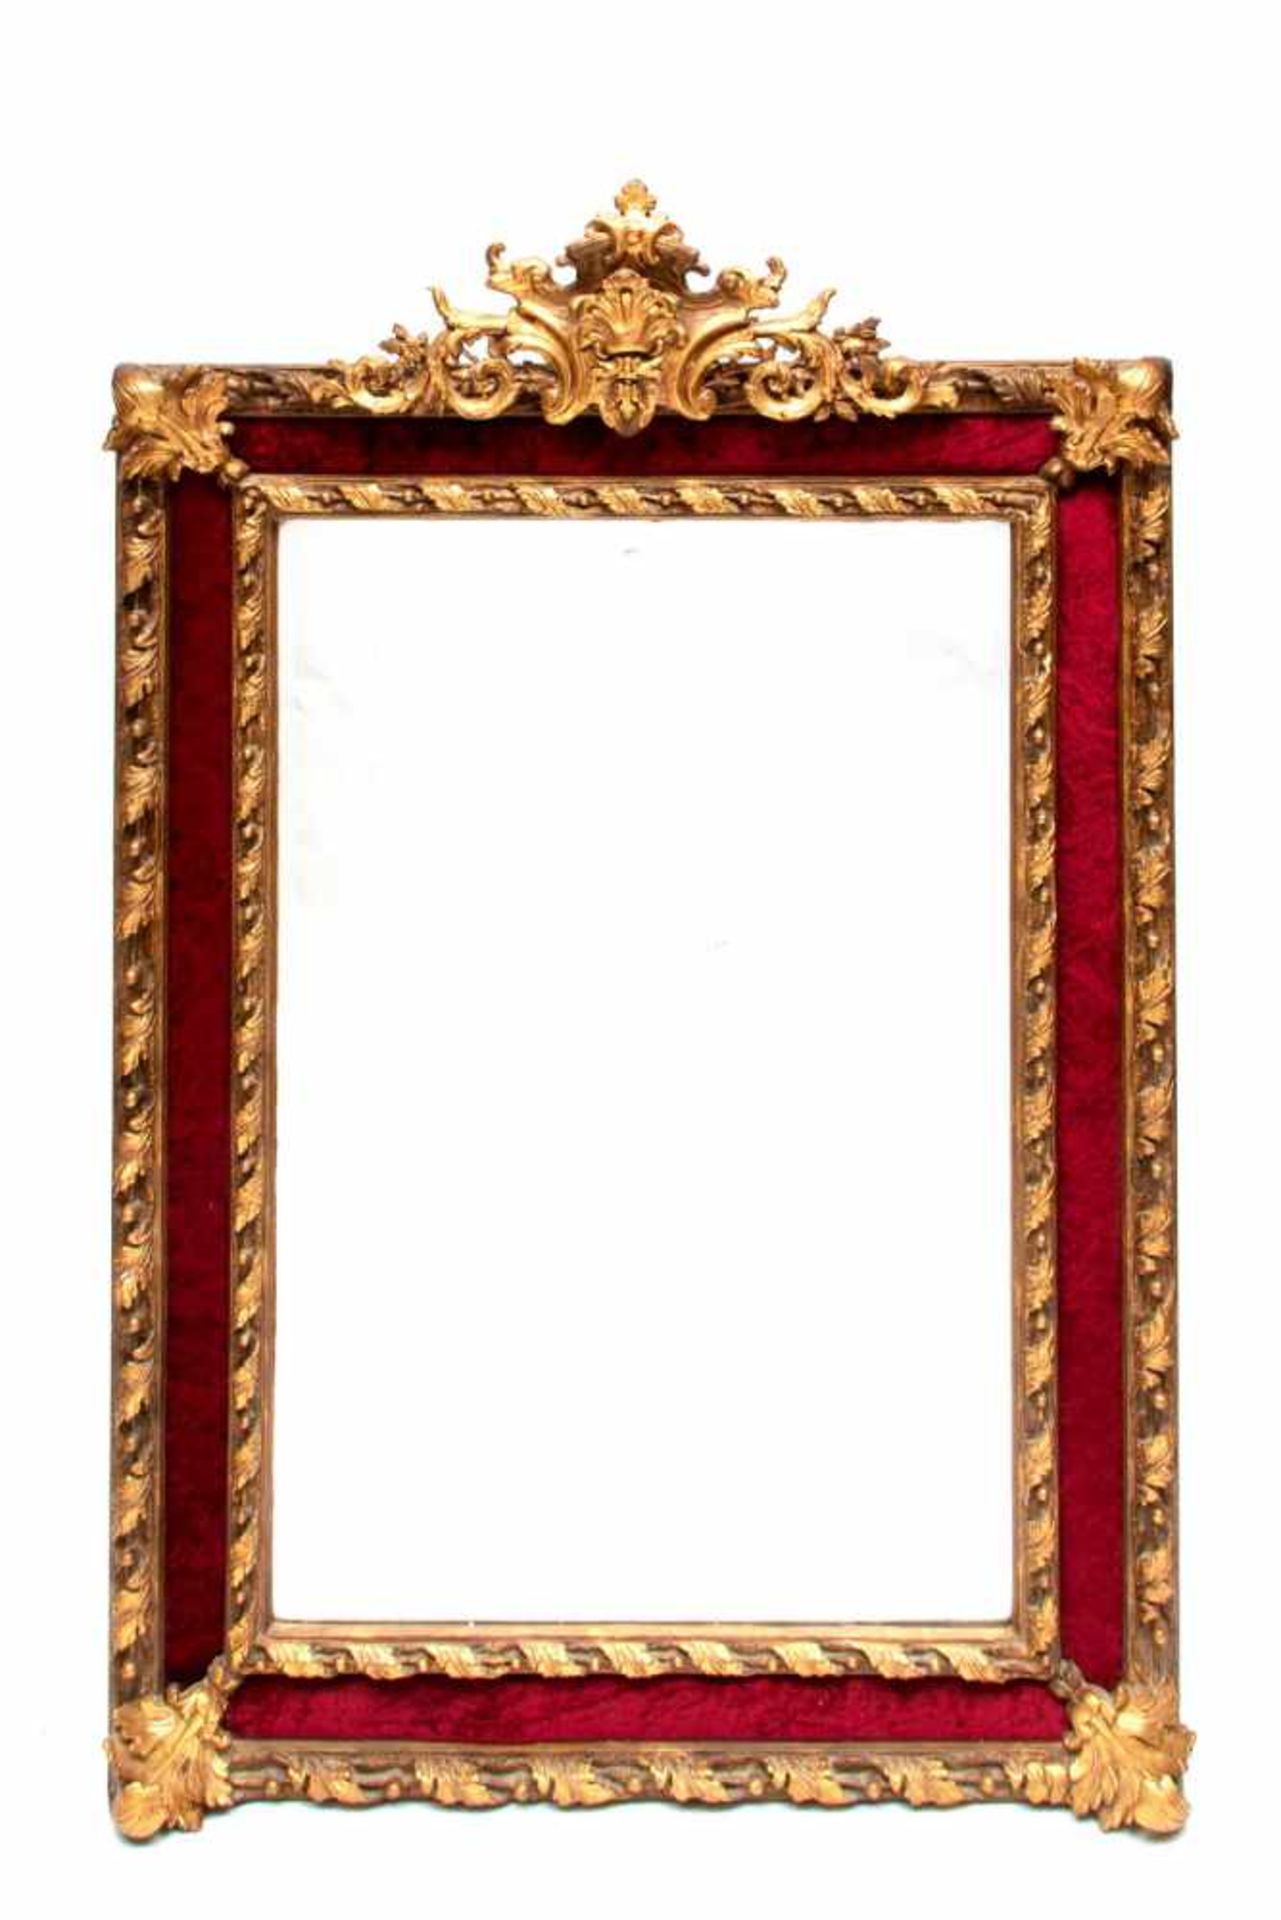 Paar kapitale rechthoekige gefacetteerde spiegels in vergulde lijst deels bekleed met rode velours